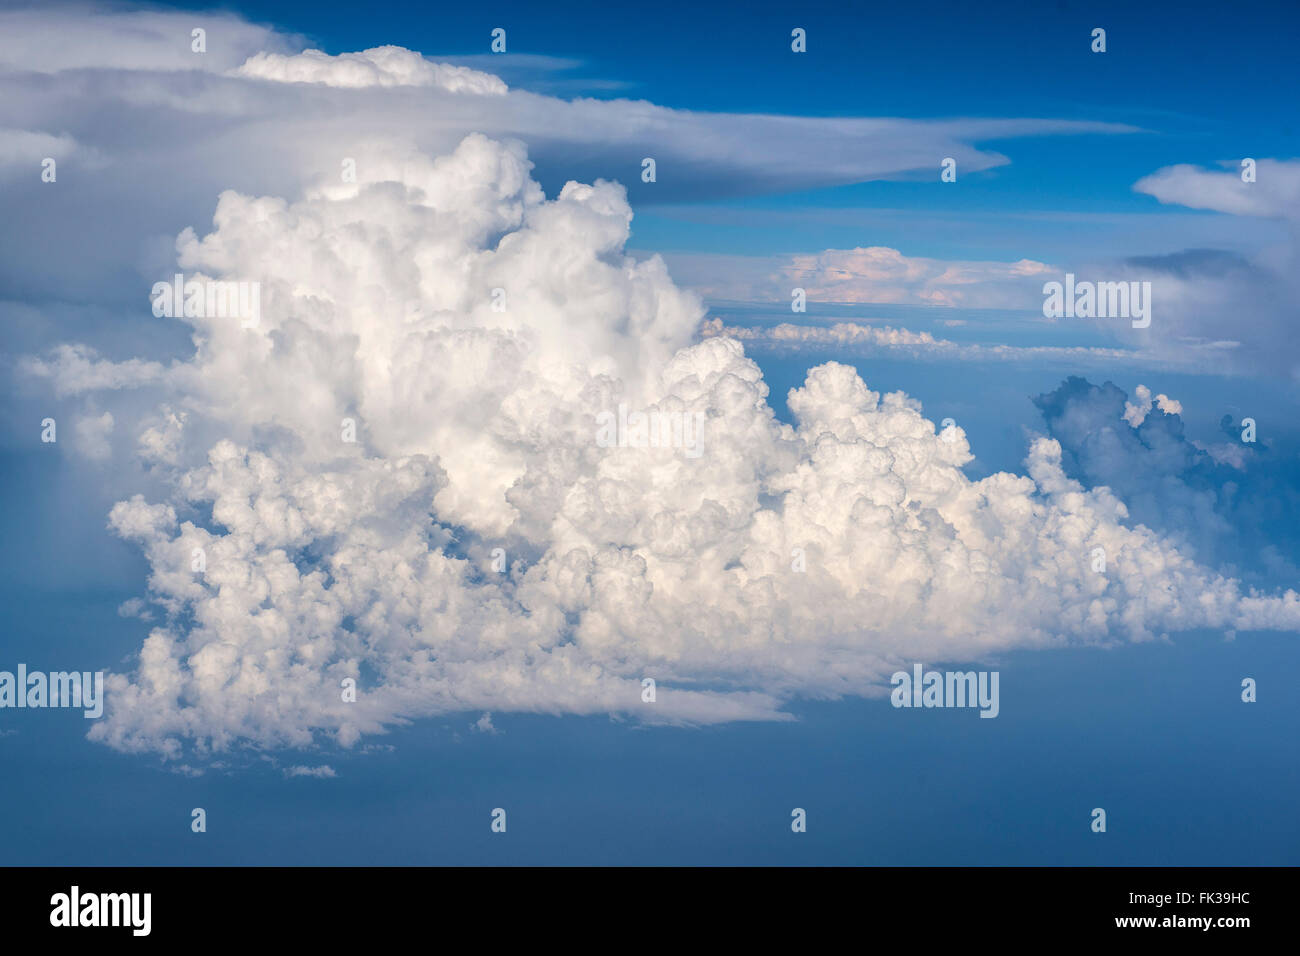 Eine schöne weiße Wolke mit einer bizarren Form in einem blauen Himmel fotografiert aus dem Flugzeugfenster auf einem Flug in Italien und Spanien Stockfoto